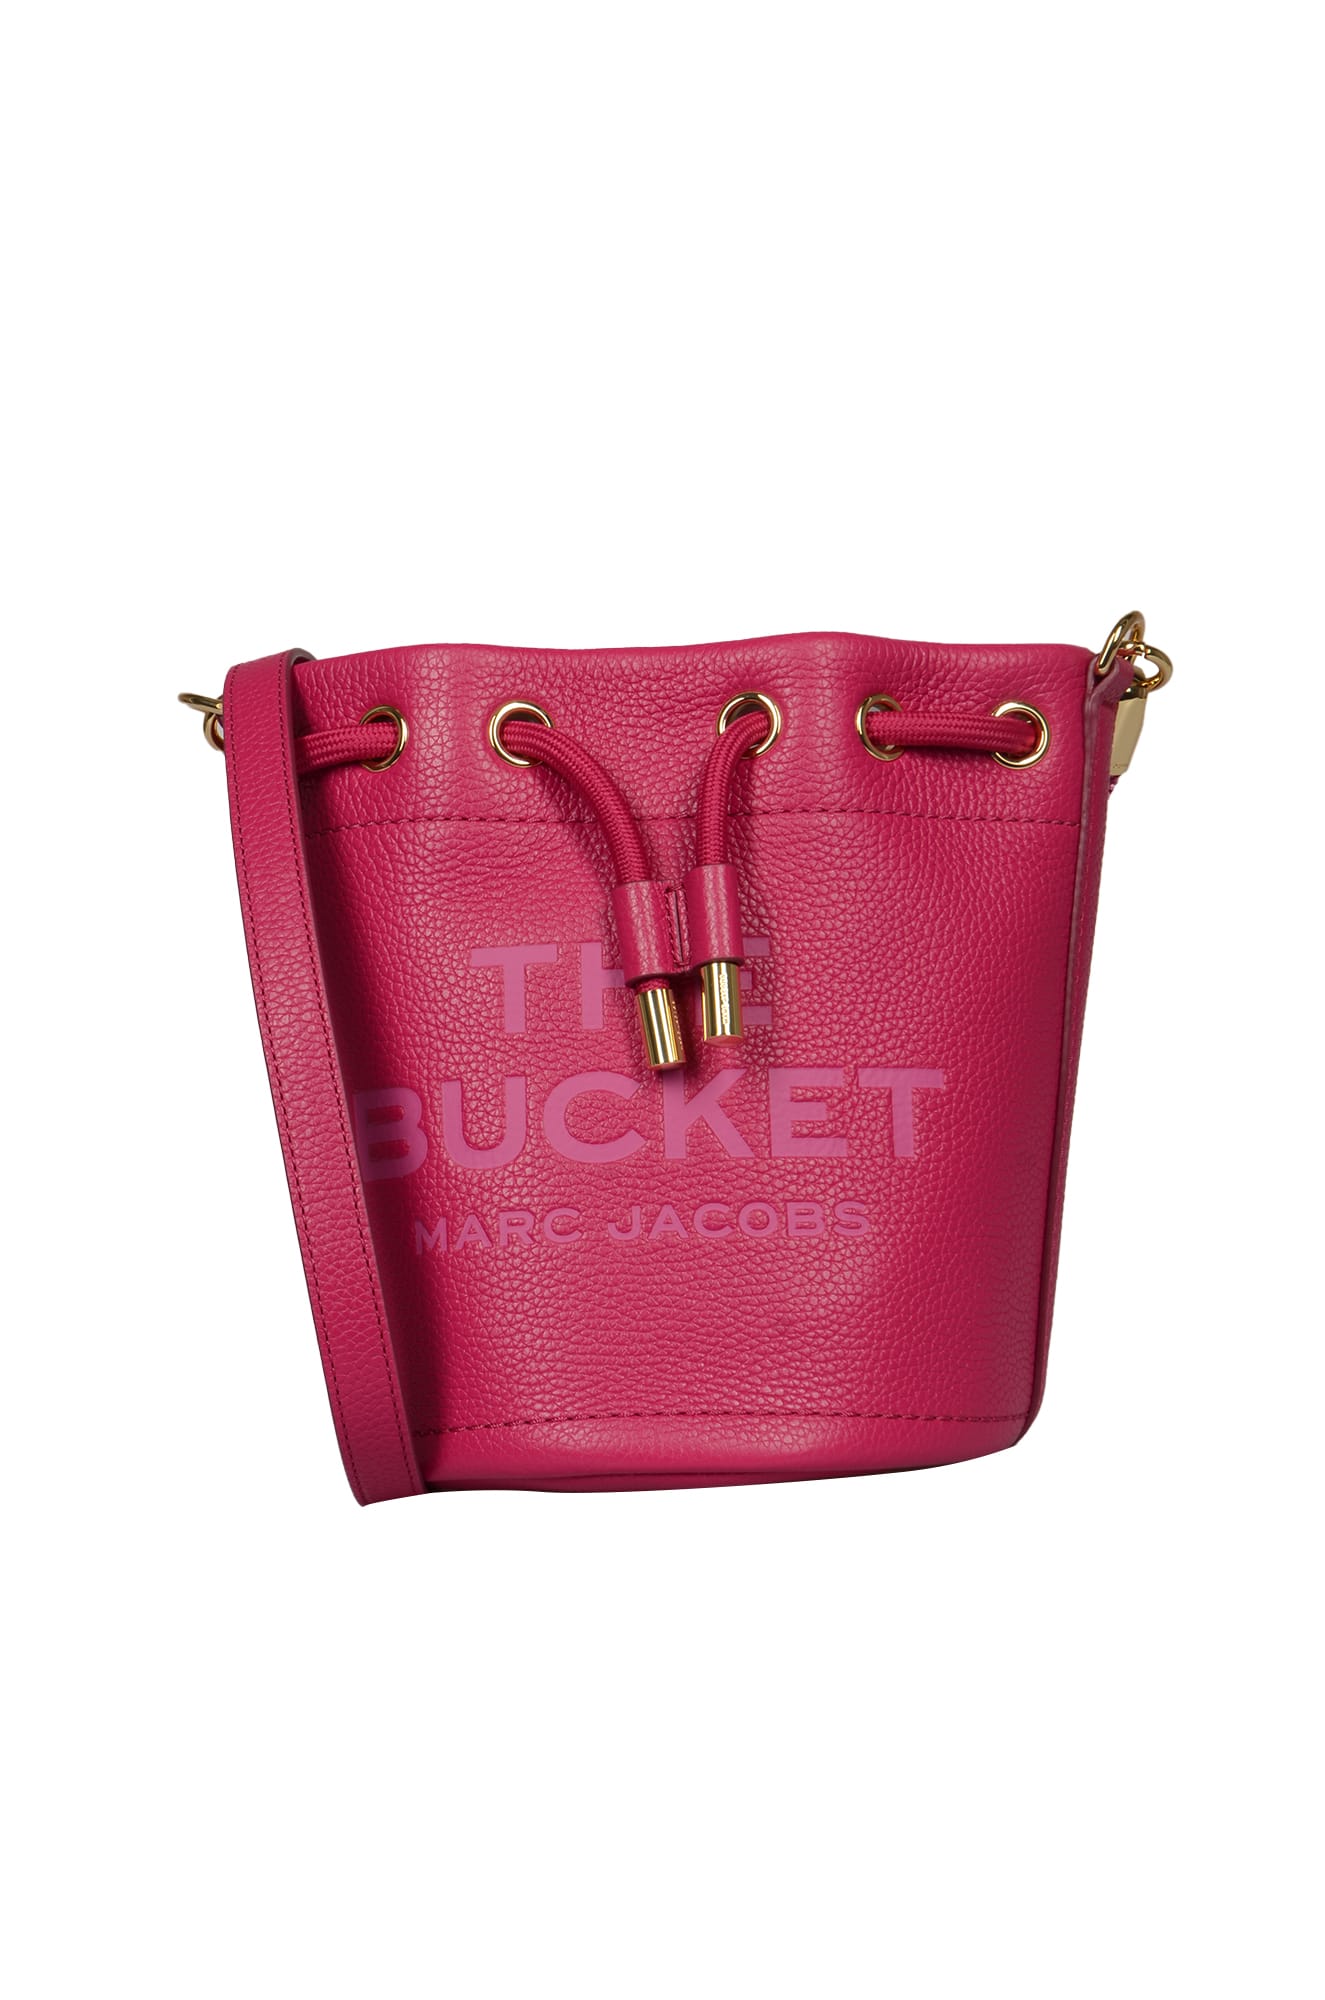 Marc Jacobs The Bucket Bucket Bag In Lipstick Pink